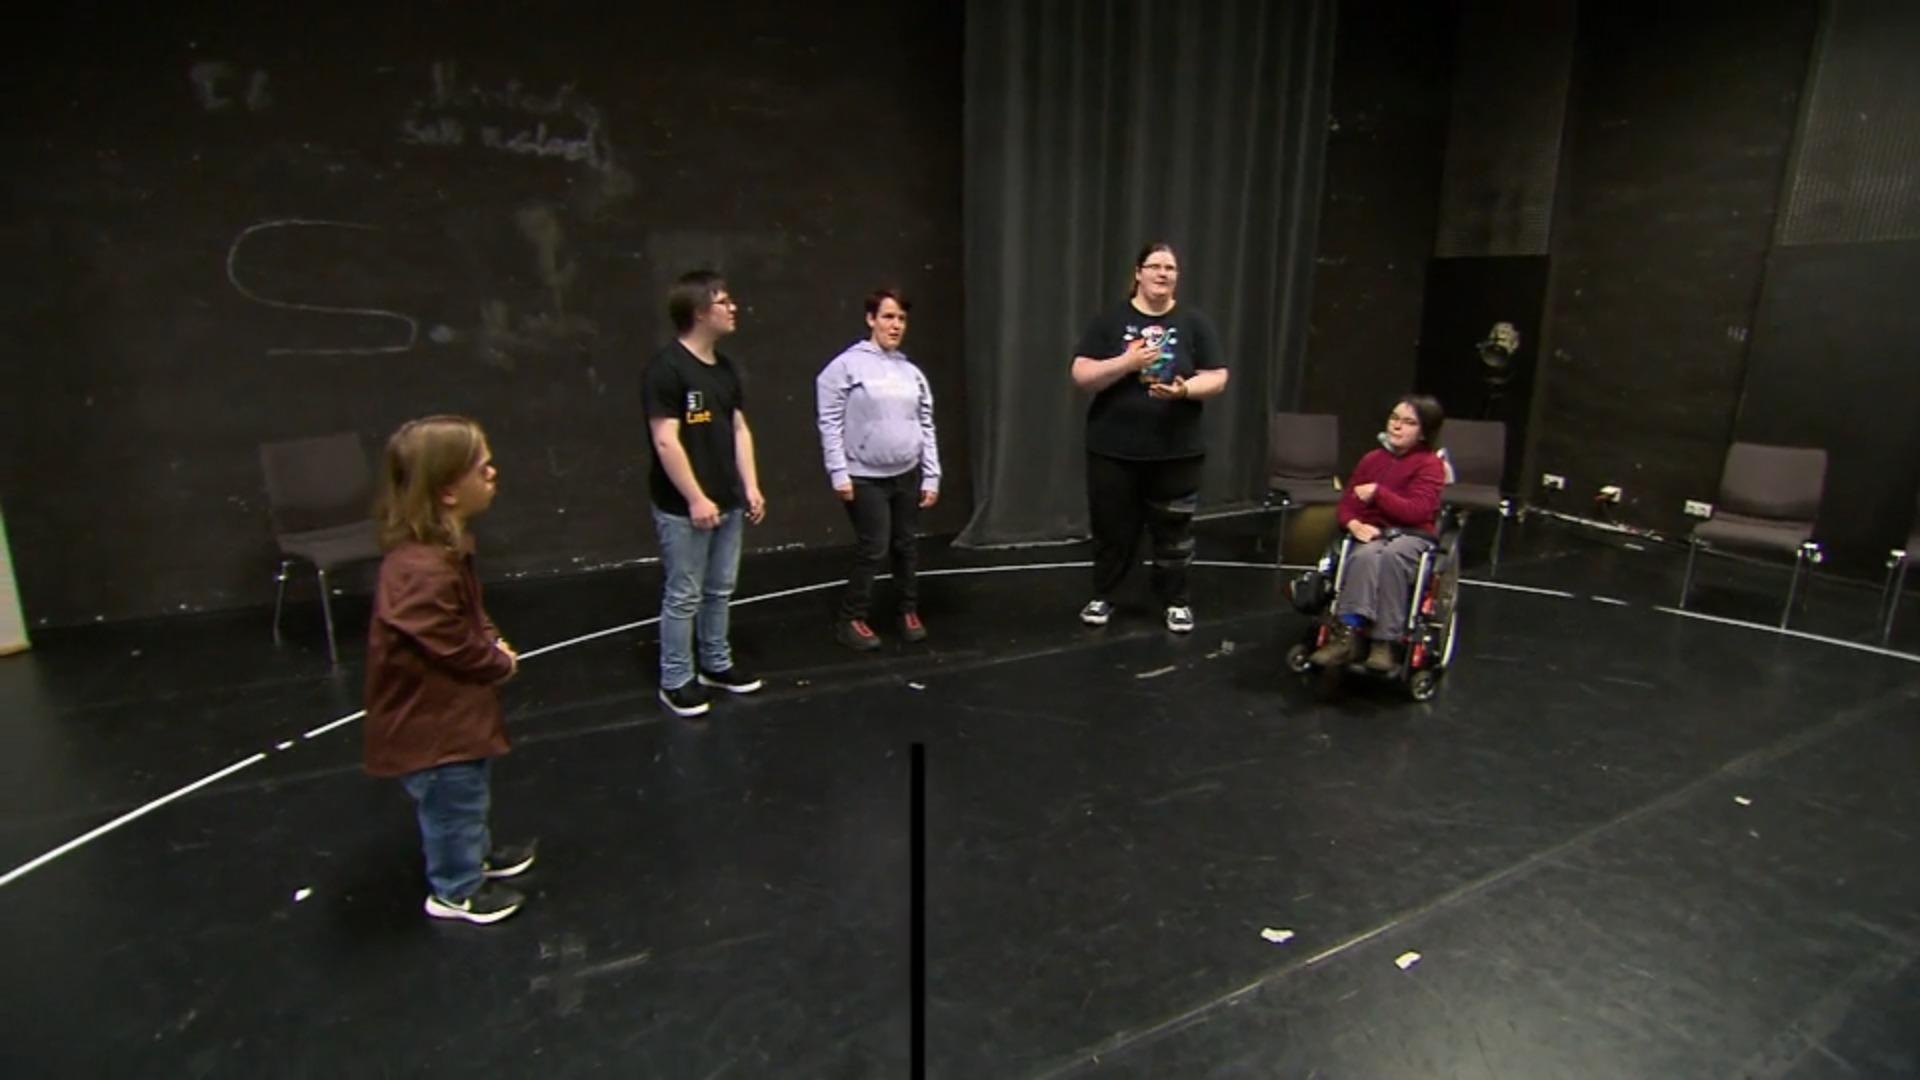 Menschen mit Behinderung werden professionelle Schauspieler Inklusion in Wuppertal